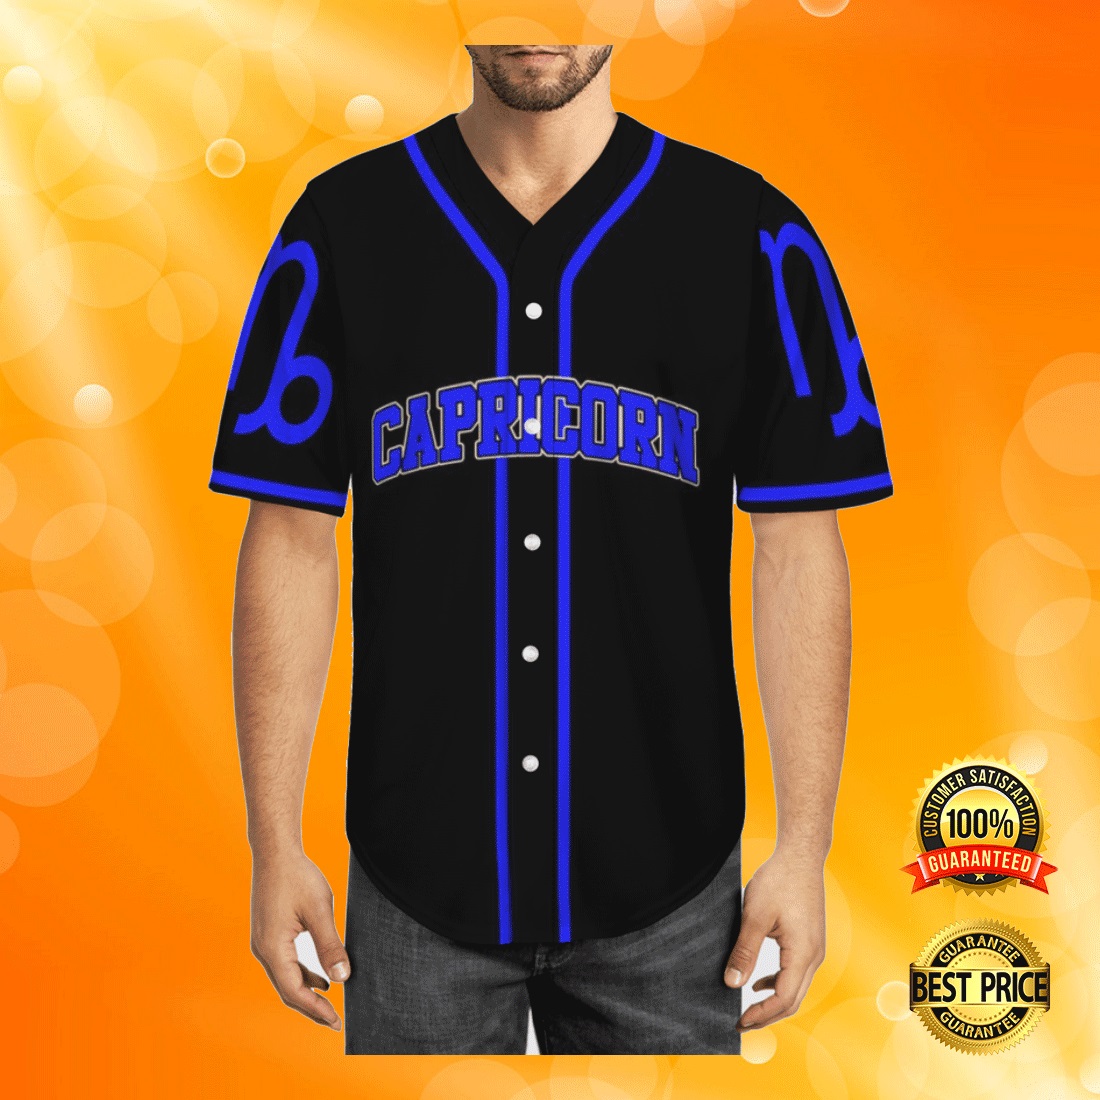 Capricorn baseball jersey 1